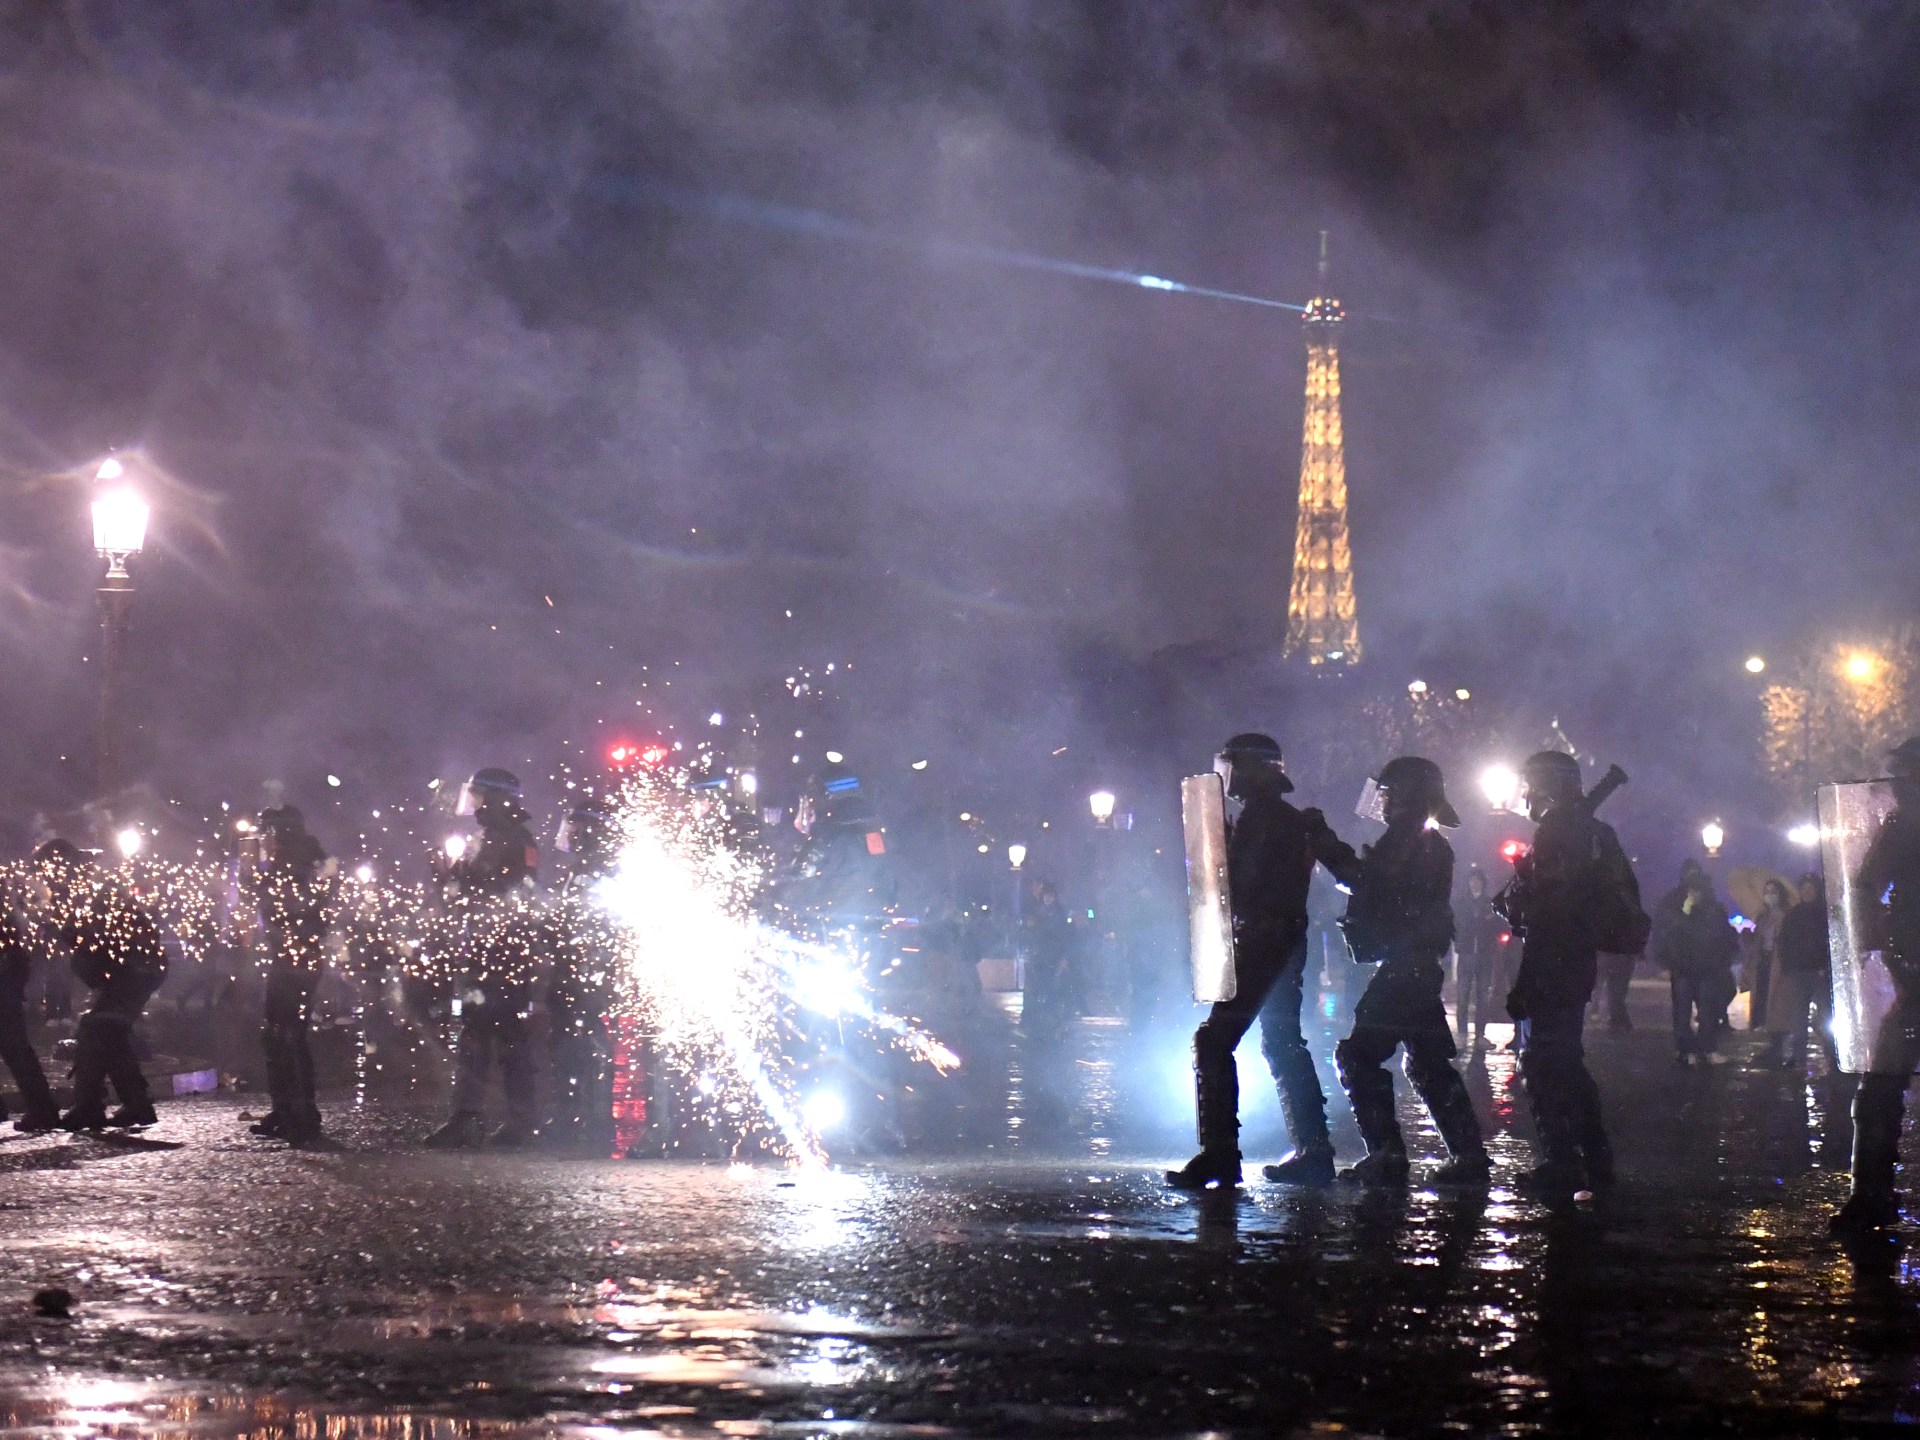 パリで 2 日目の警察と年金デモ参加者の衝突 | 欧州連合ニュース